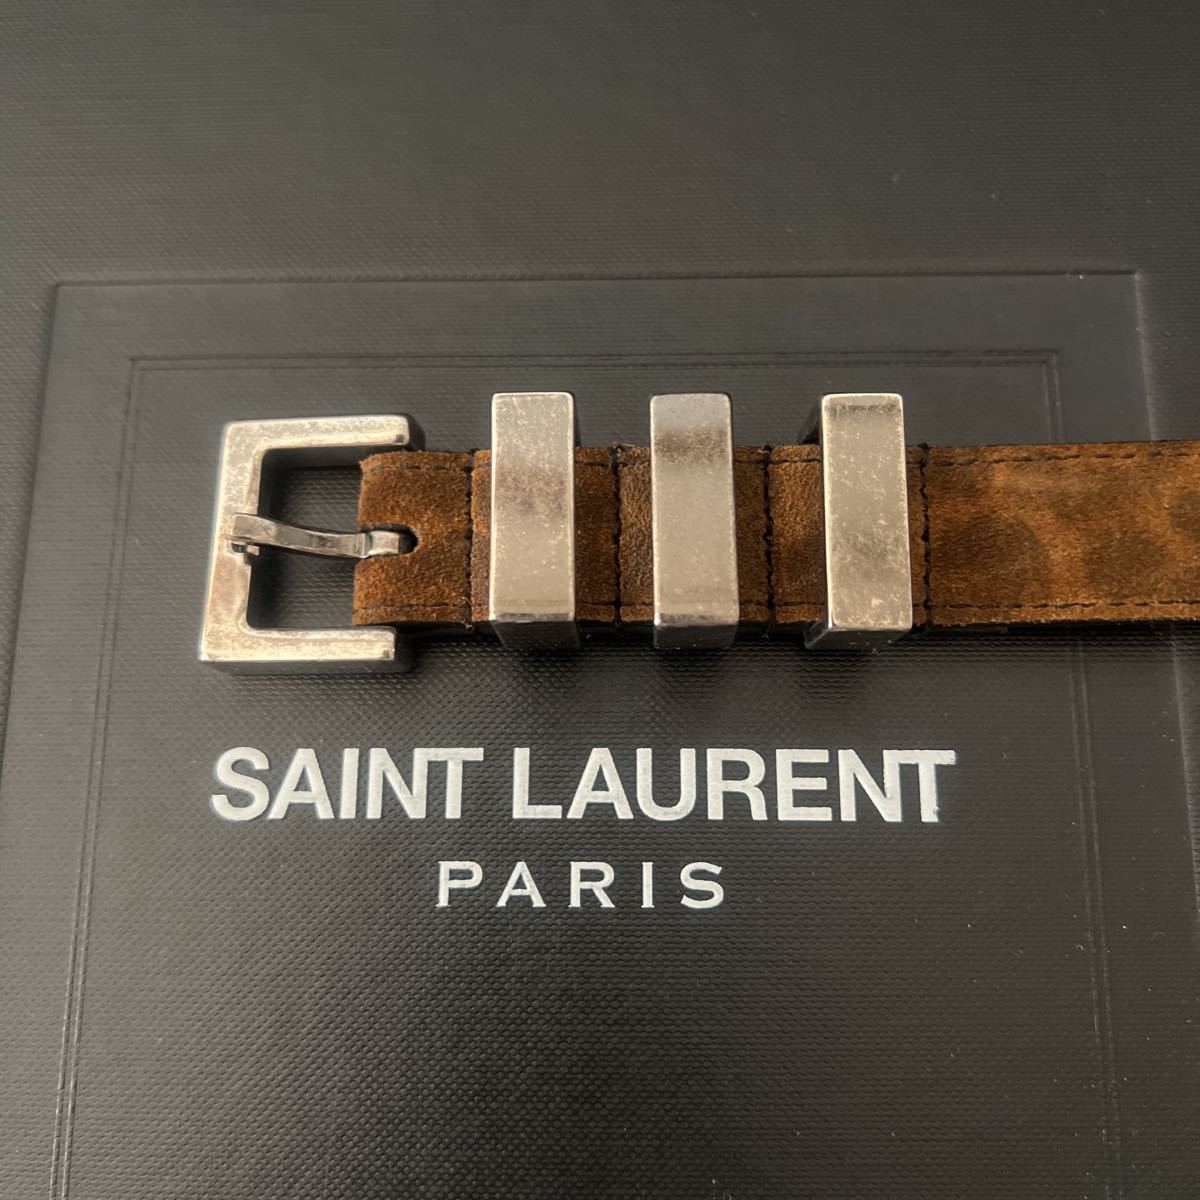 SAINT LAURENT PARIS by Hedi Slimane レオパード 3連ベルト ナロー